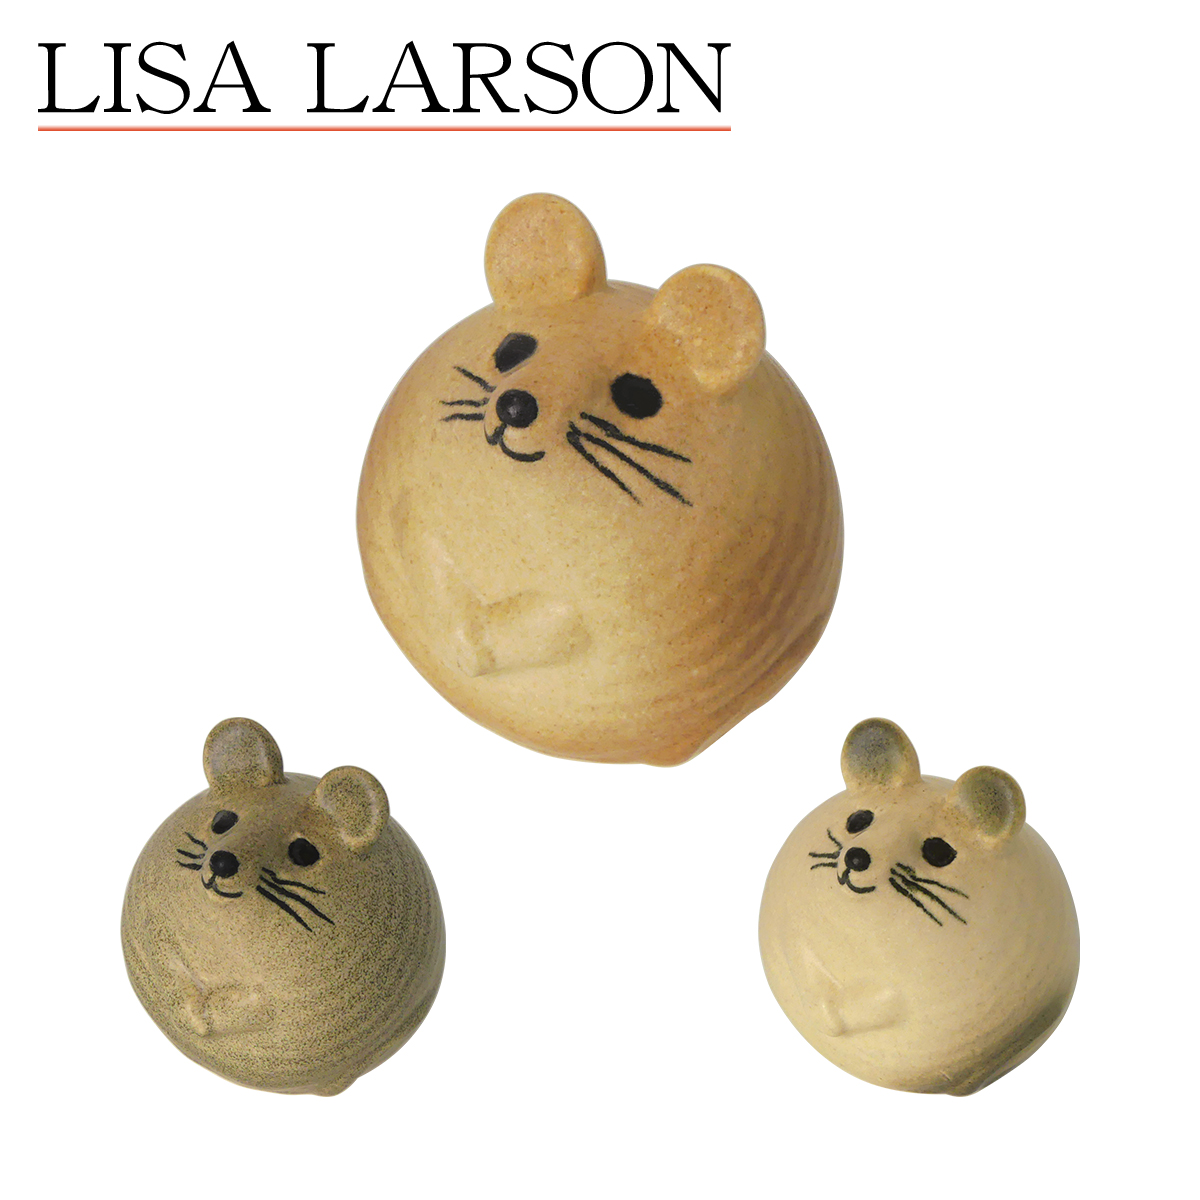 リサラーソン ネズミ界の有名鼠 まるみと愛嬌は抜群 北欧雑貨 お買い得 リサ ラーソン Lisa Larson ネズミ 3匹のねずみ 置物 マウス LisaLarson 1263002 ねずみ 北欧インテリア ブラウン ホワイト グレー 即日出荷 陶器 1263004 1263003 動物